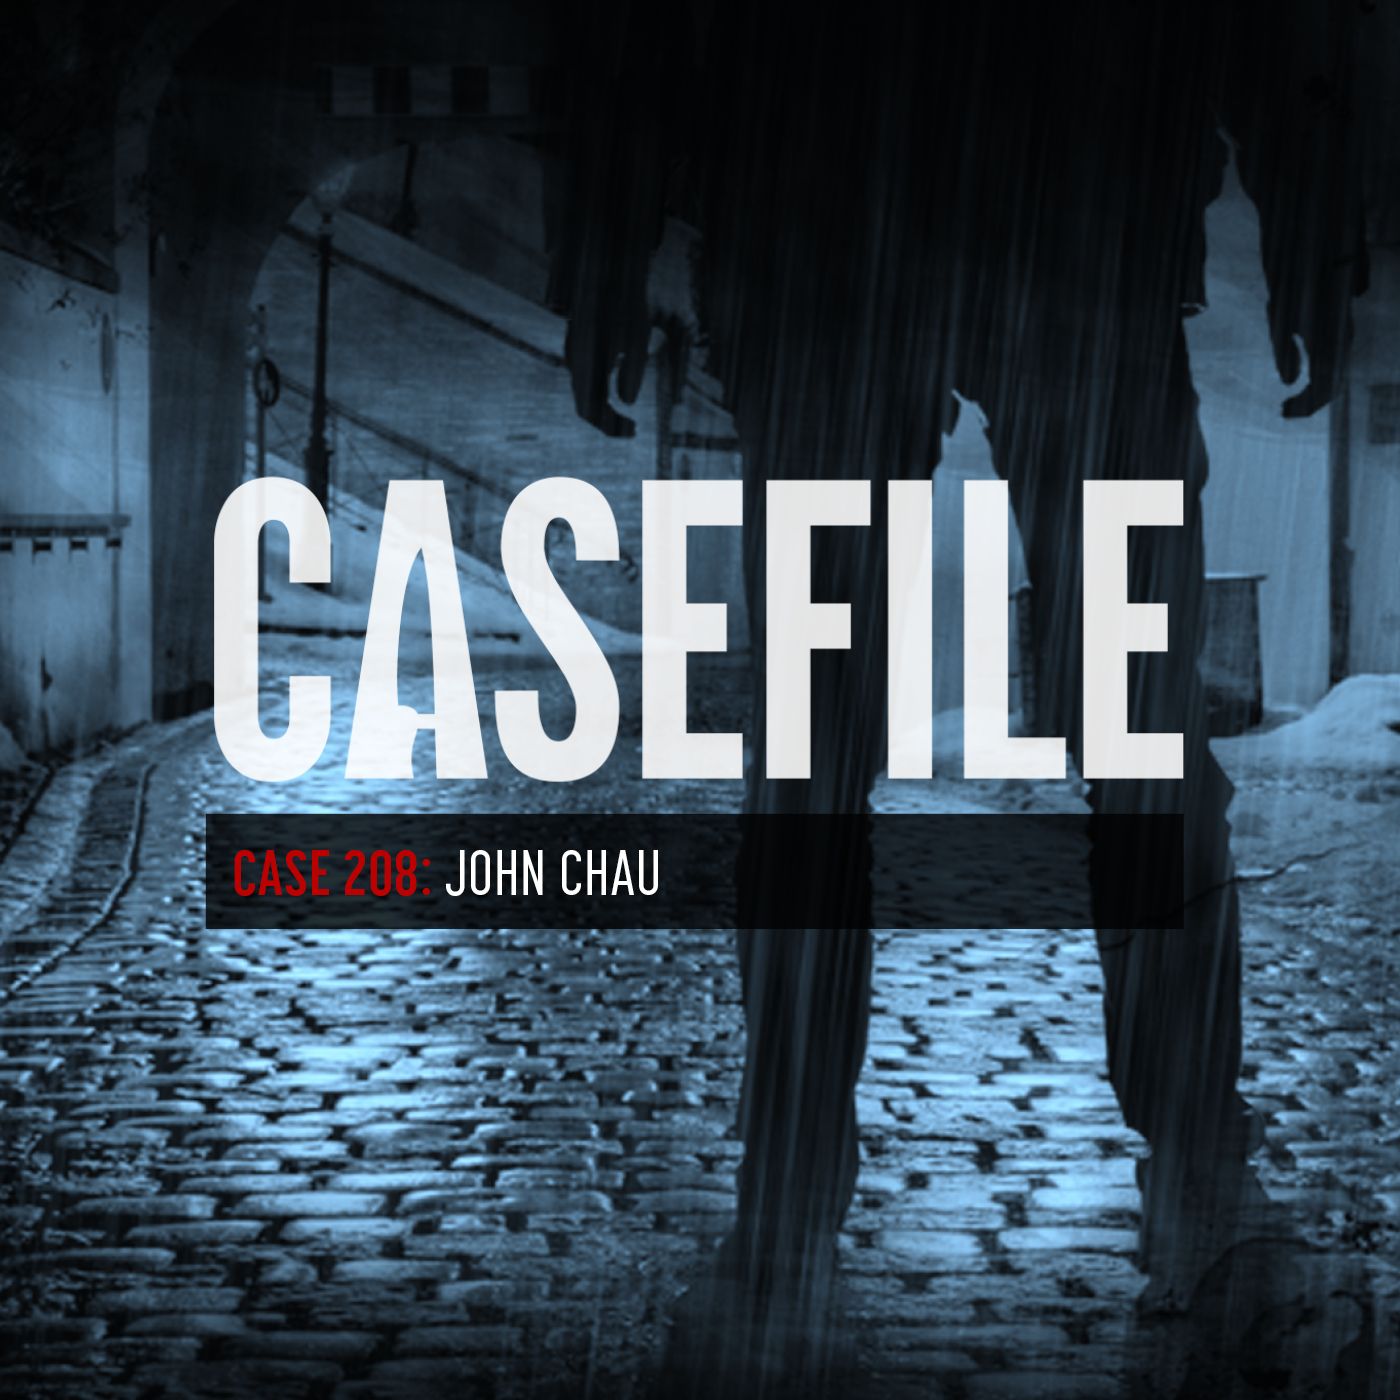 Case 208: John Chau